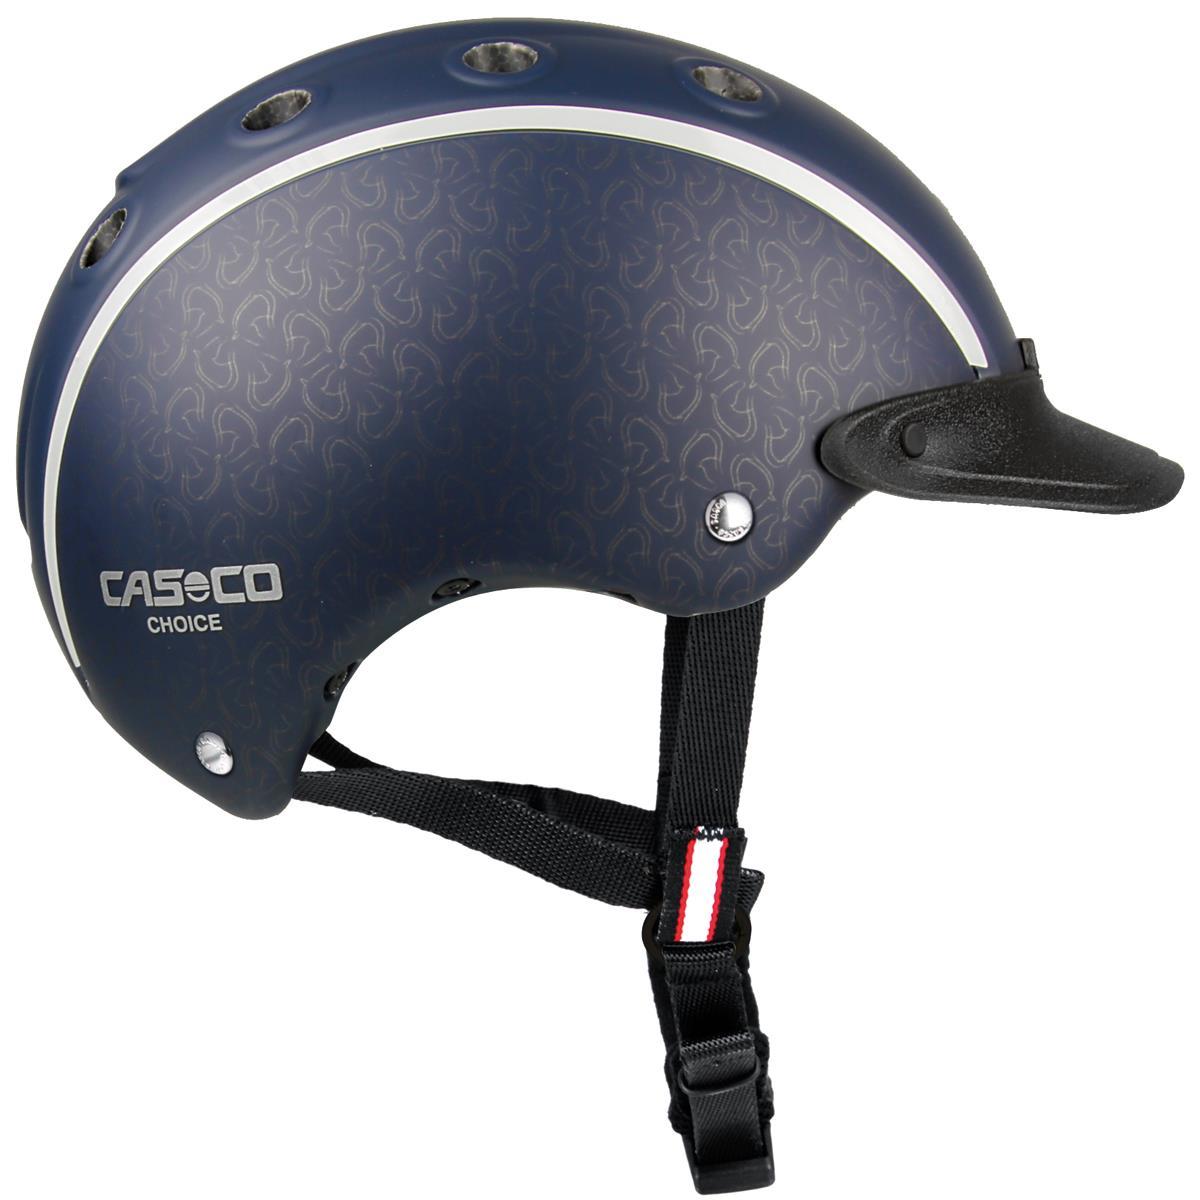 Casco CHOICE riding helmet for children